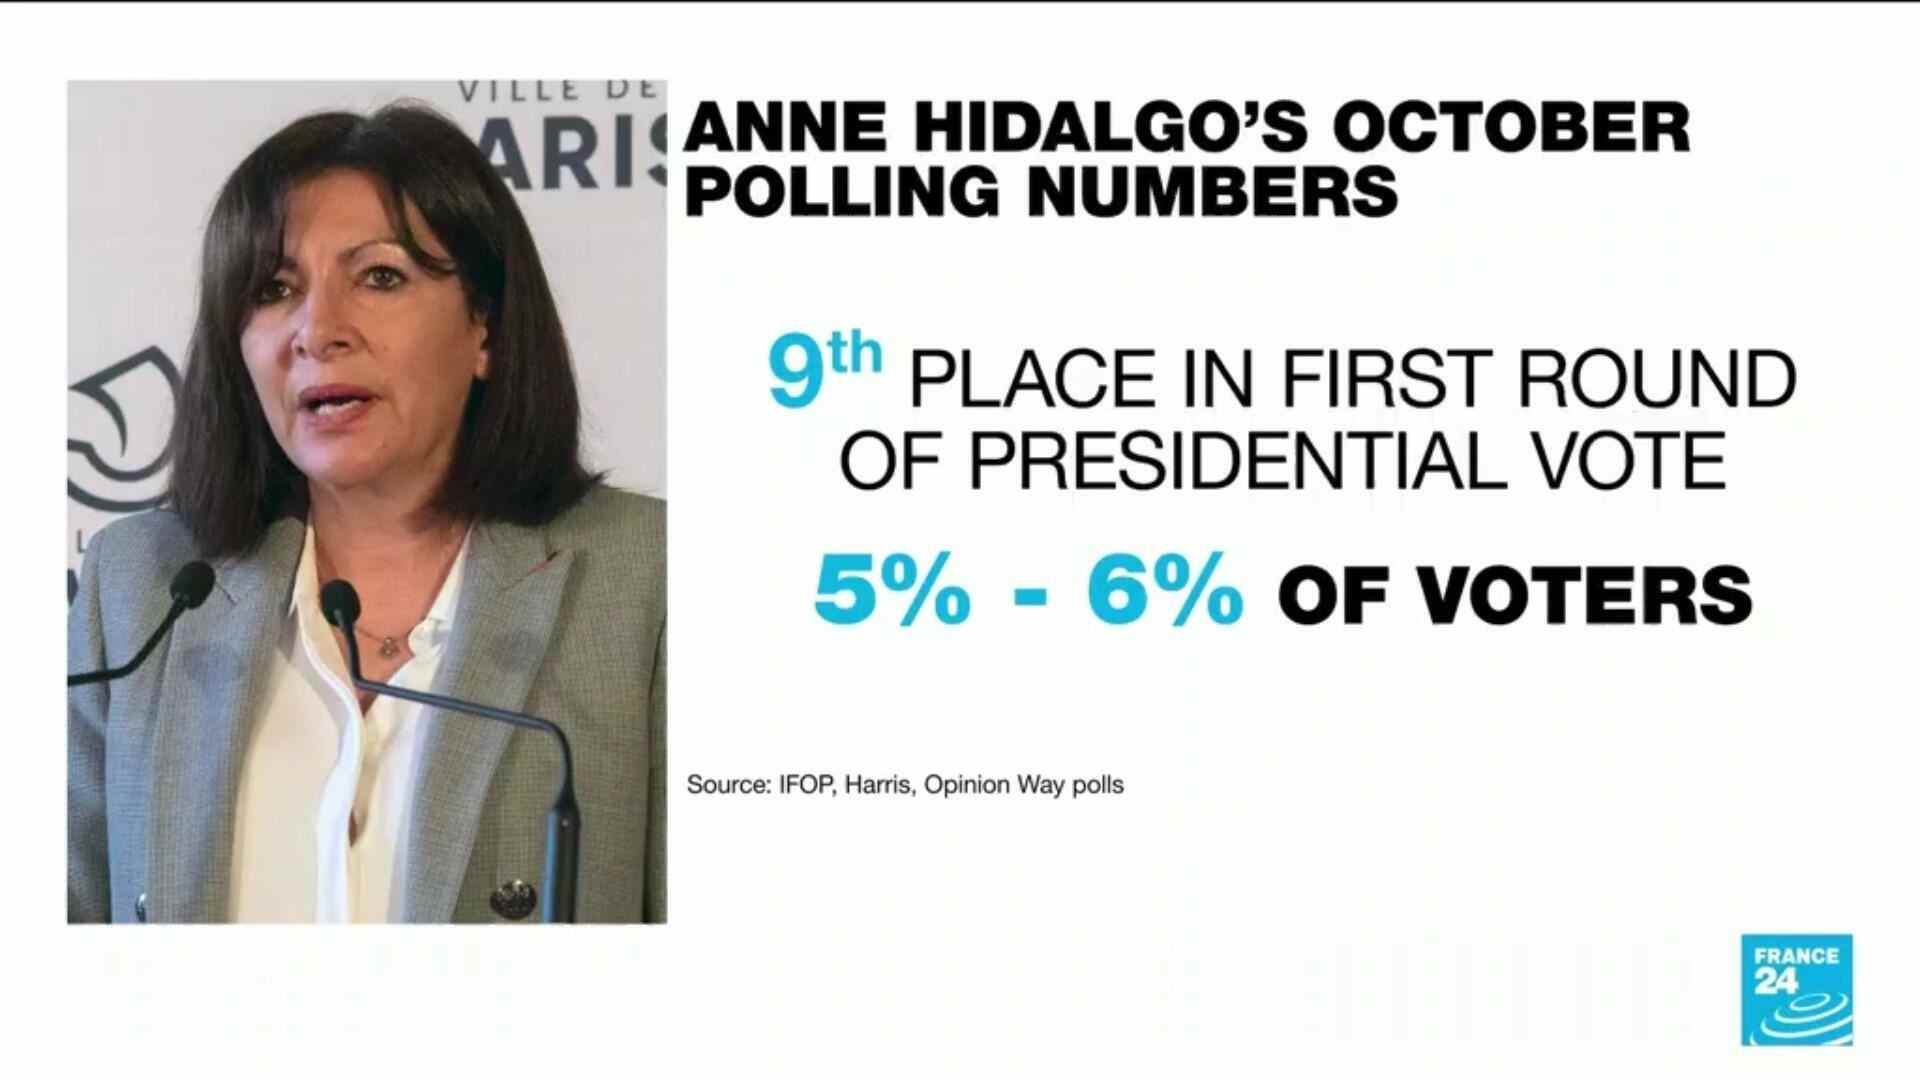 Die Pariser Bürgermeisterin Anne Hidalgo hat laut Umfragen von IFOP, Harris und Opinion Way vom Oktober 2021 die Unterstützung von 5 bis 6 Prozent der Wähler bei den französischen Präsidentschaftswahlen 2022.